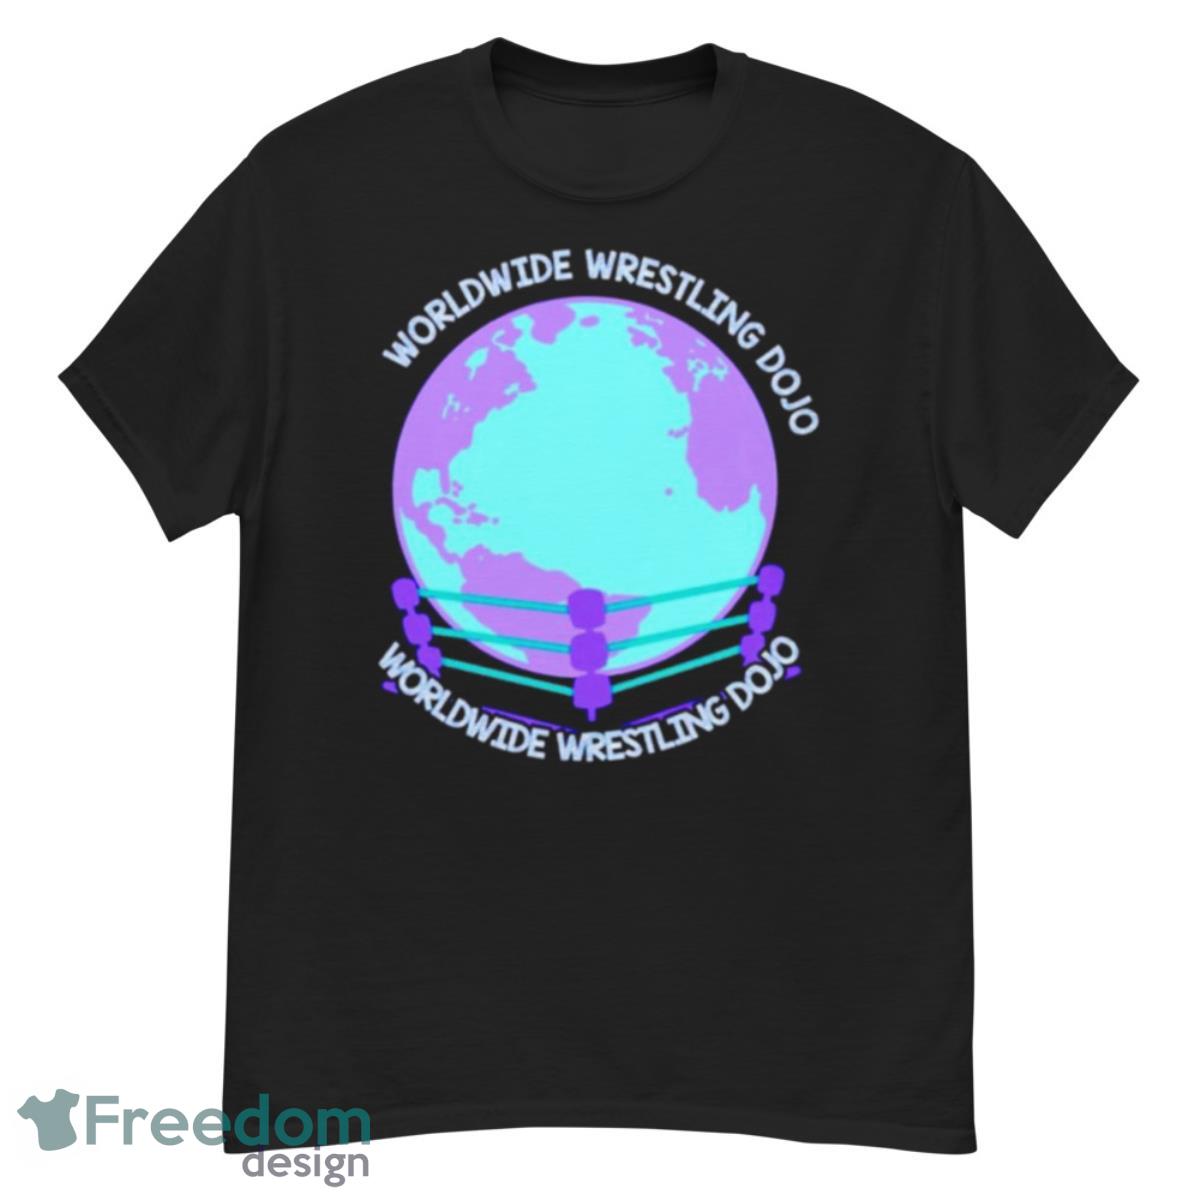 Worldwide wrestling dojo shirt - G500 Men’s Classic T-Shirt